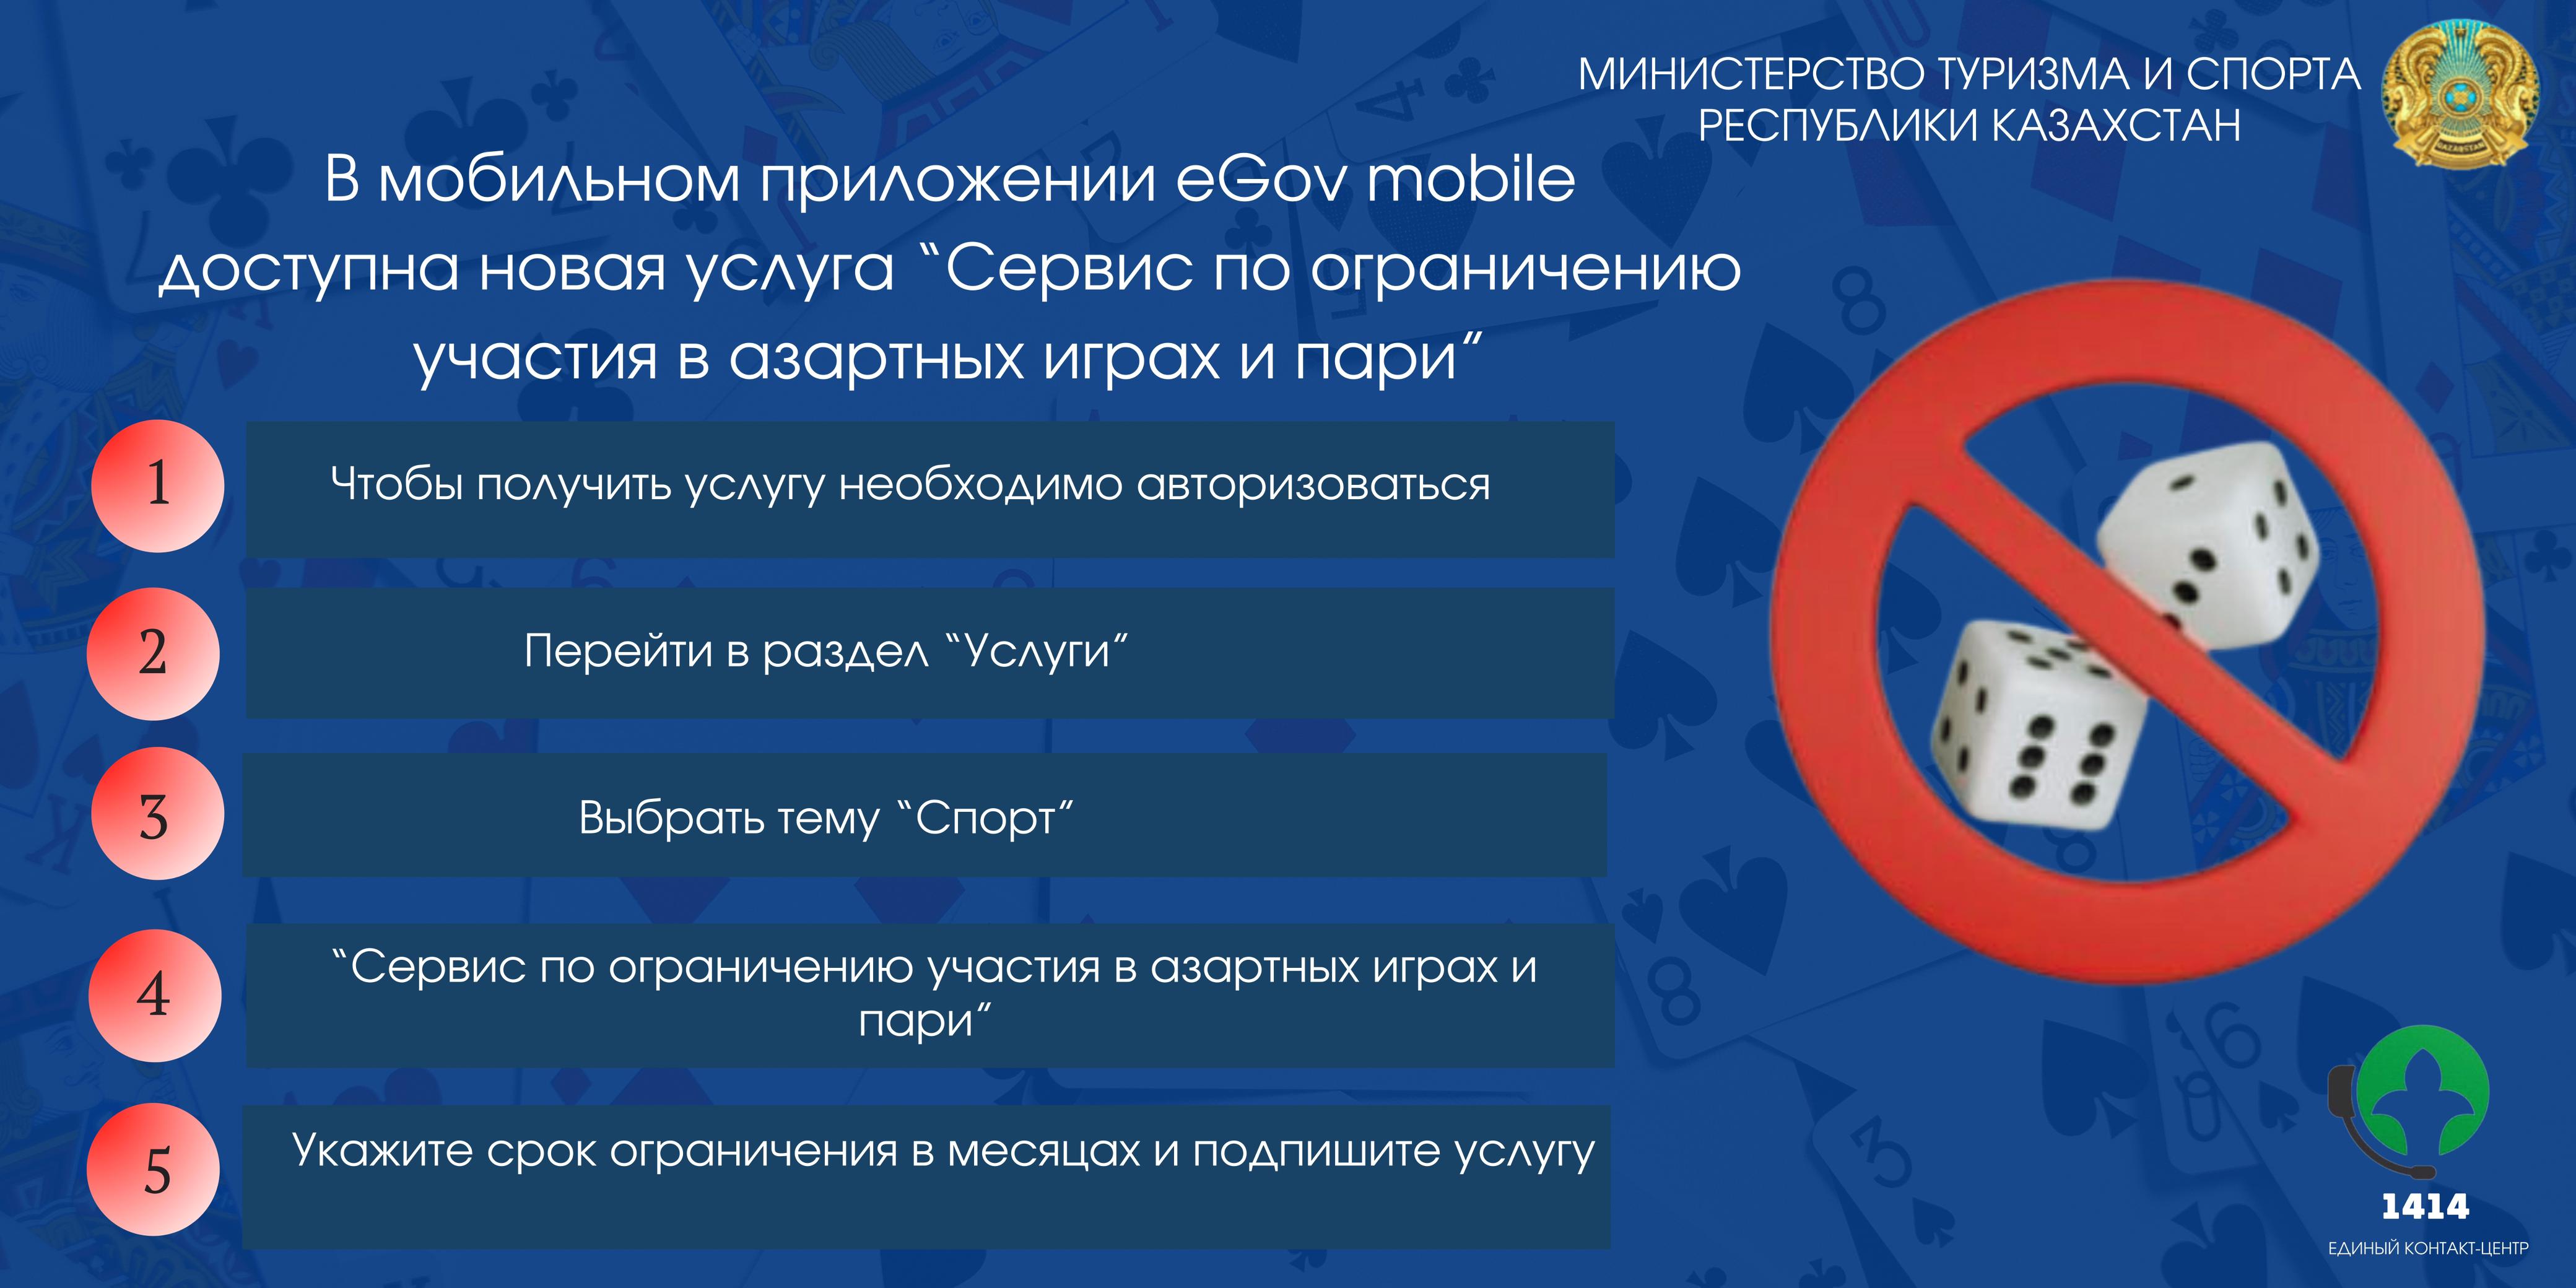 В мобильном приложении eGov mobile доступна новая услуга "Сервис по ограничению участия в азартных играх и пари"